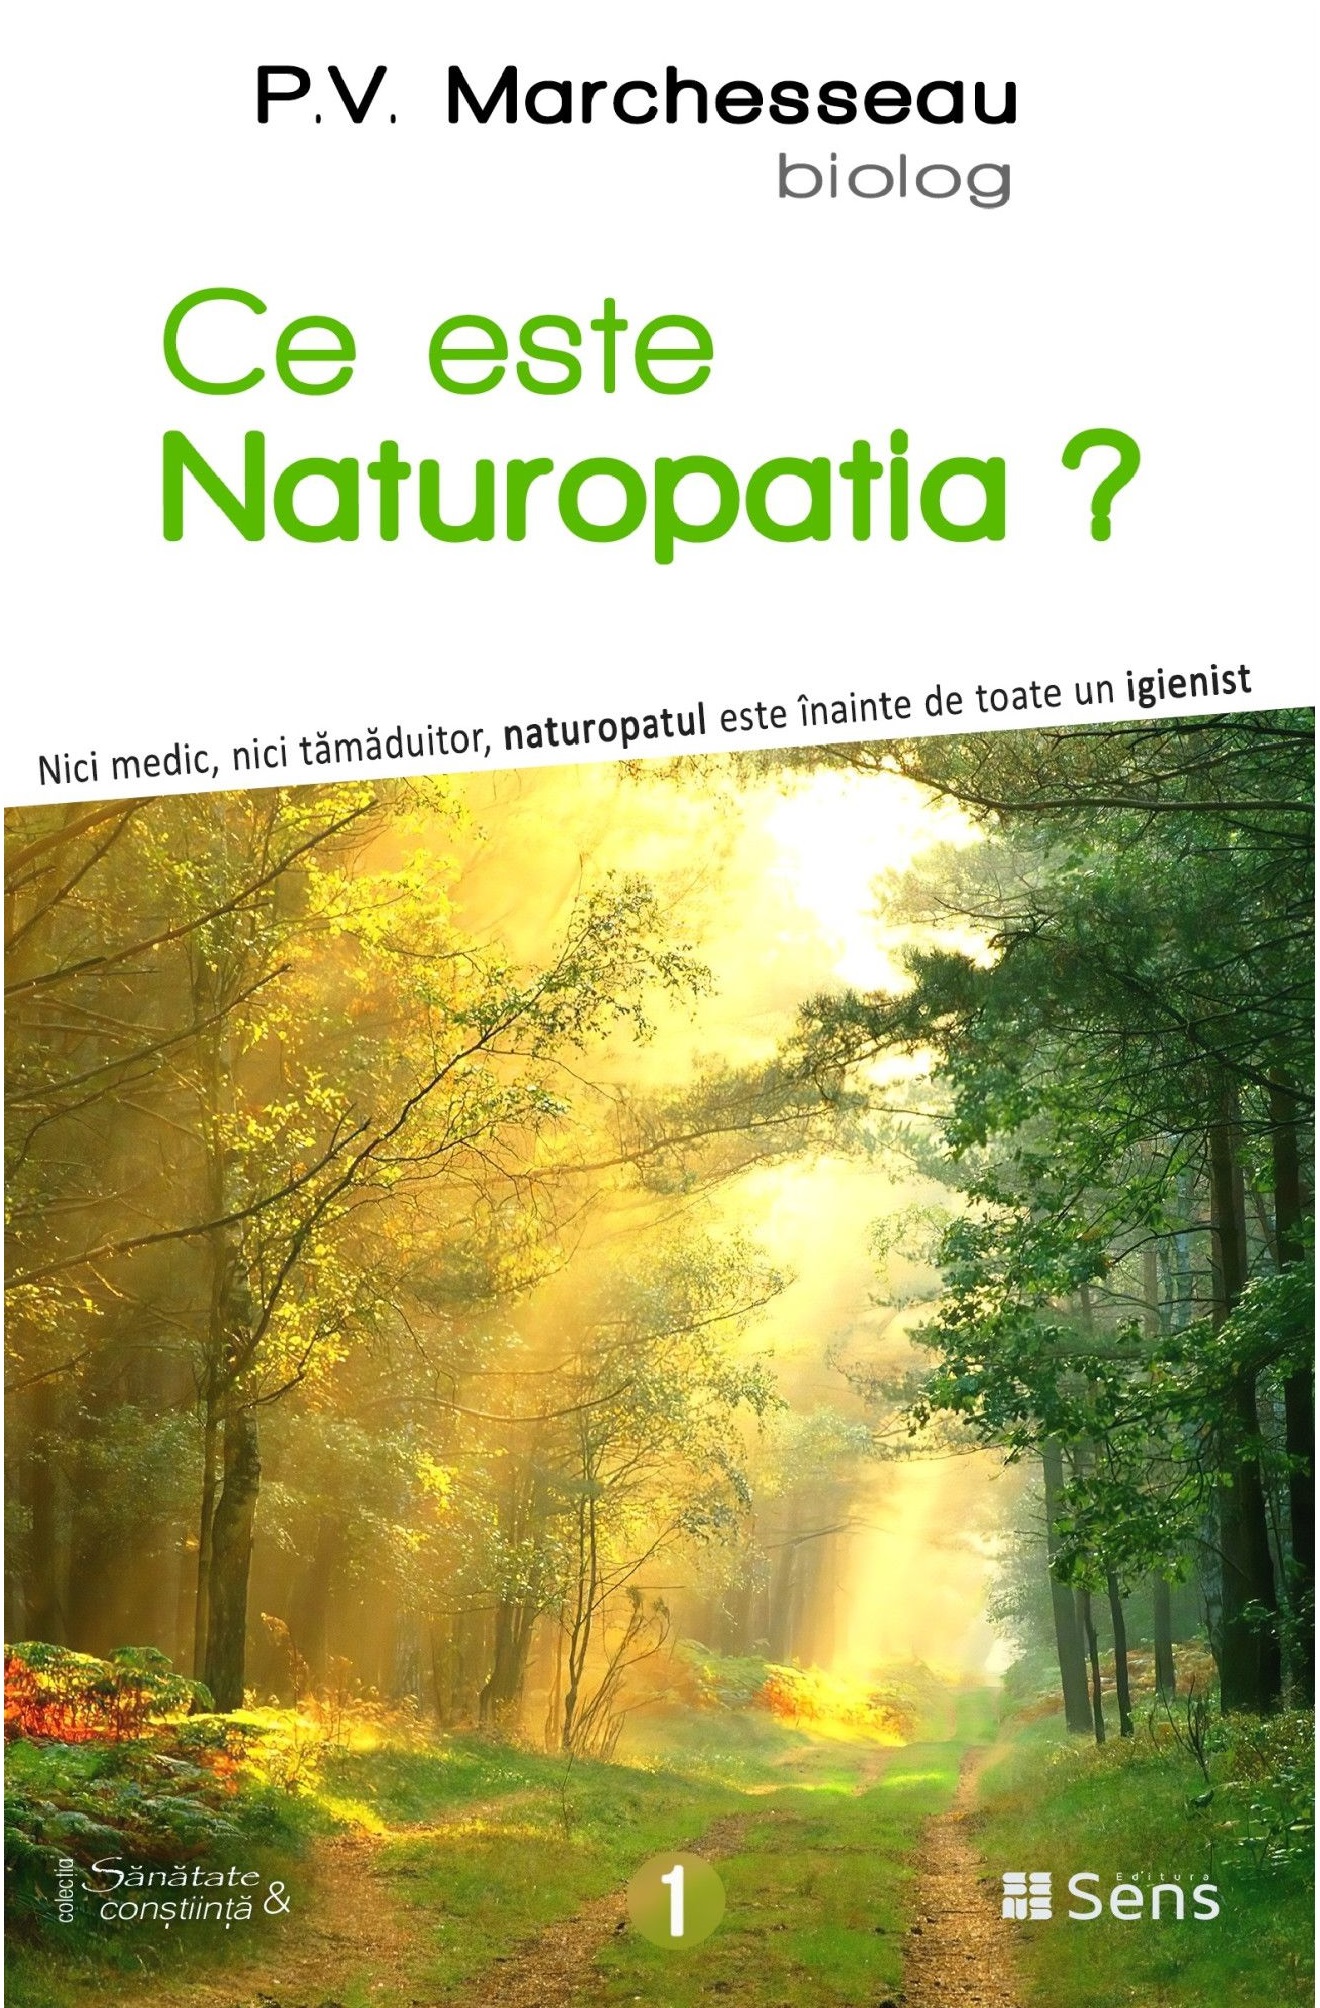 Ce este Naturopatia? | Pierre Valentin Marchesseau carturesti 2022